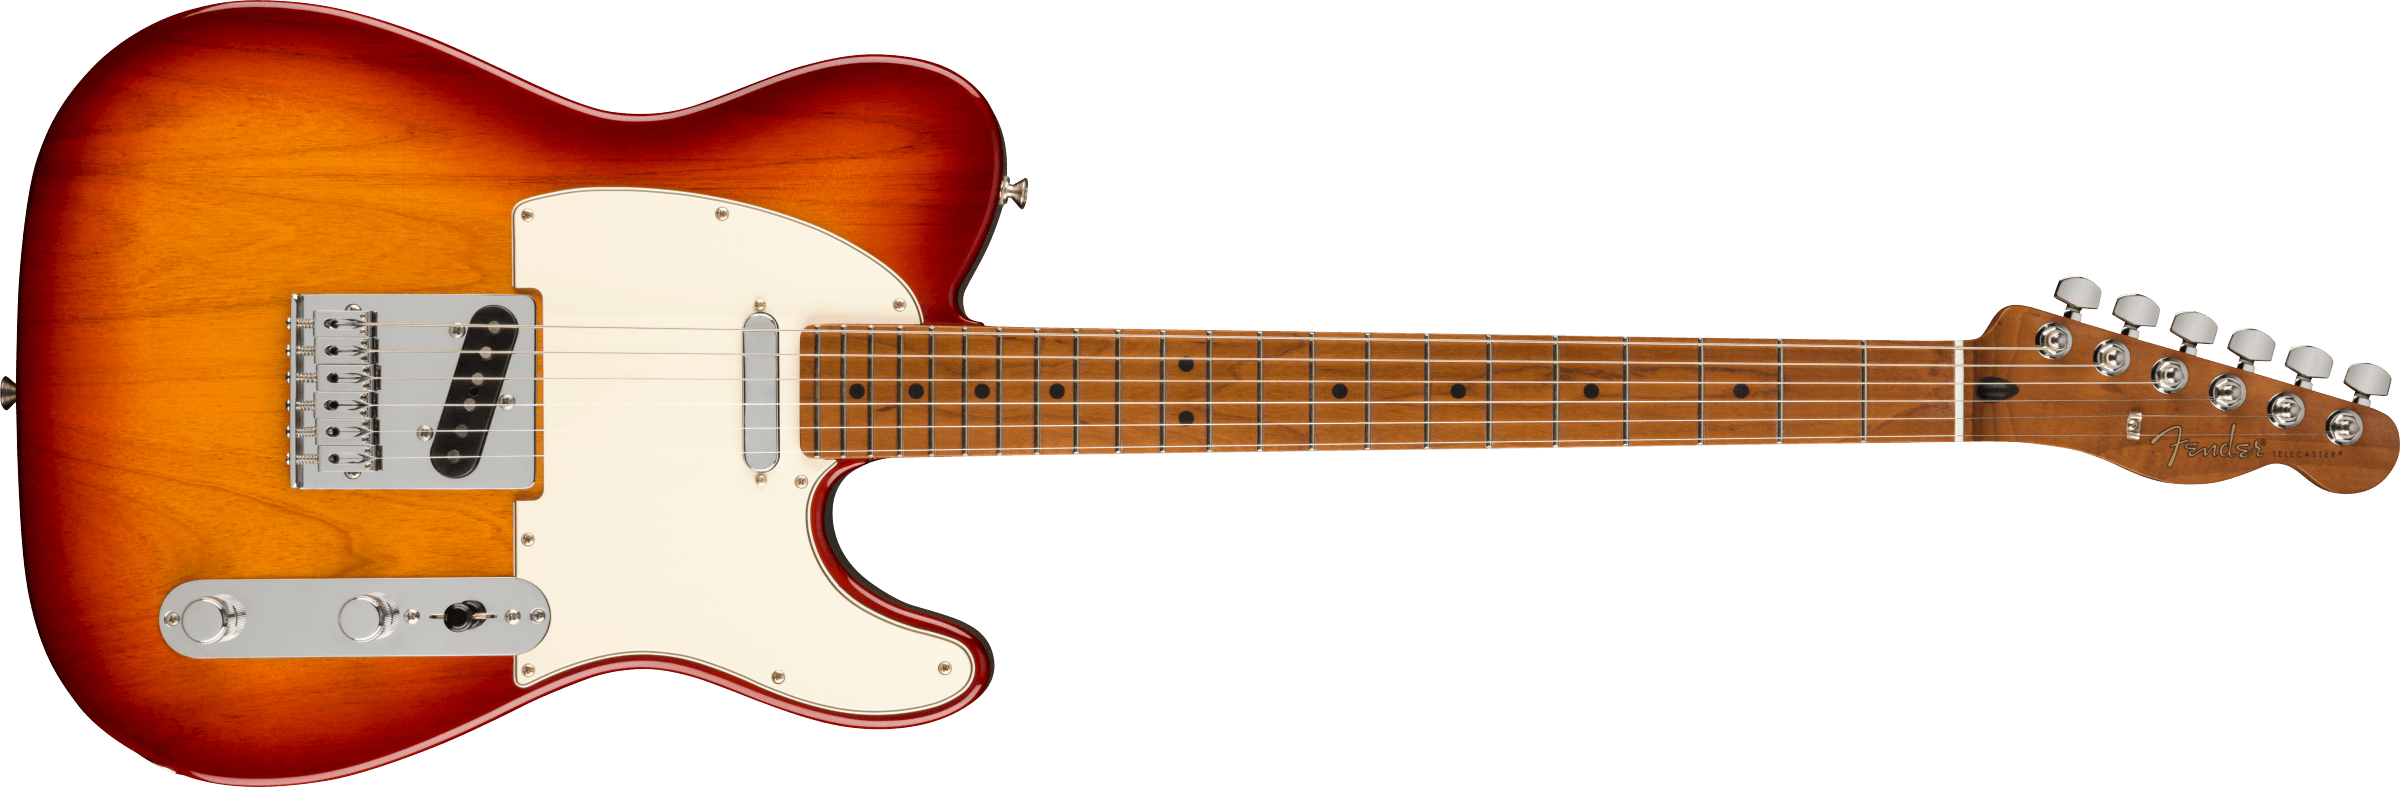 Fender Player Telecaster Siennaburst Roasted Maple Neck